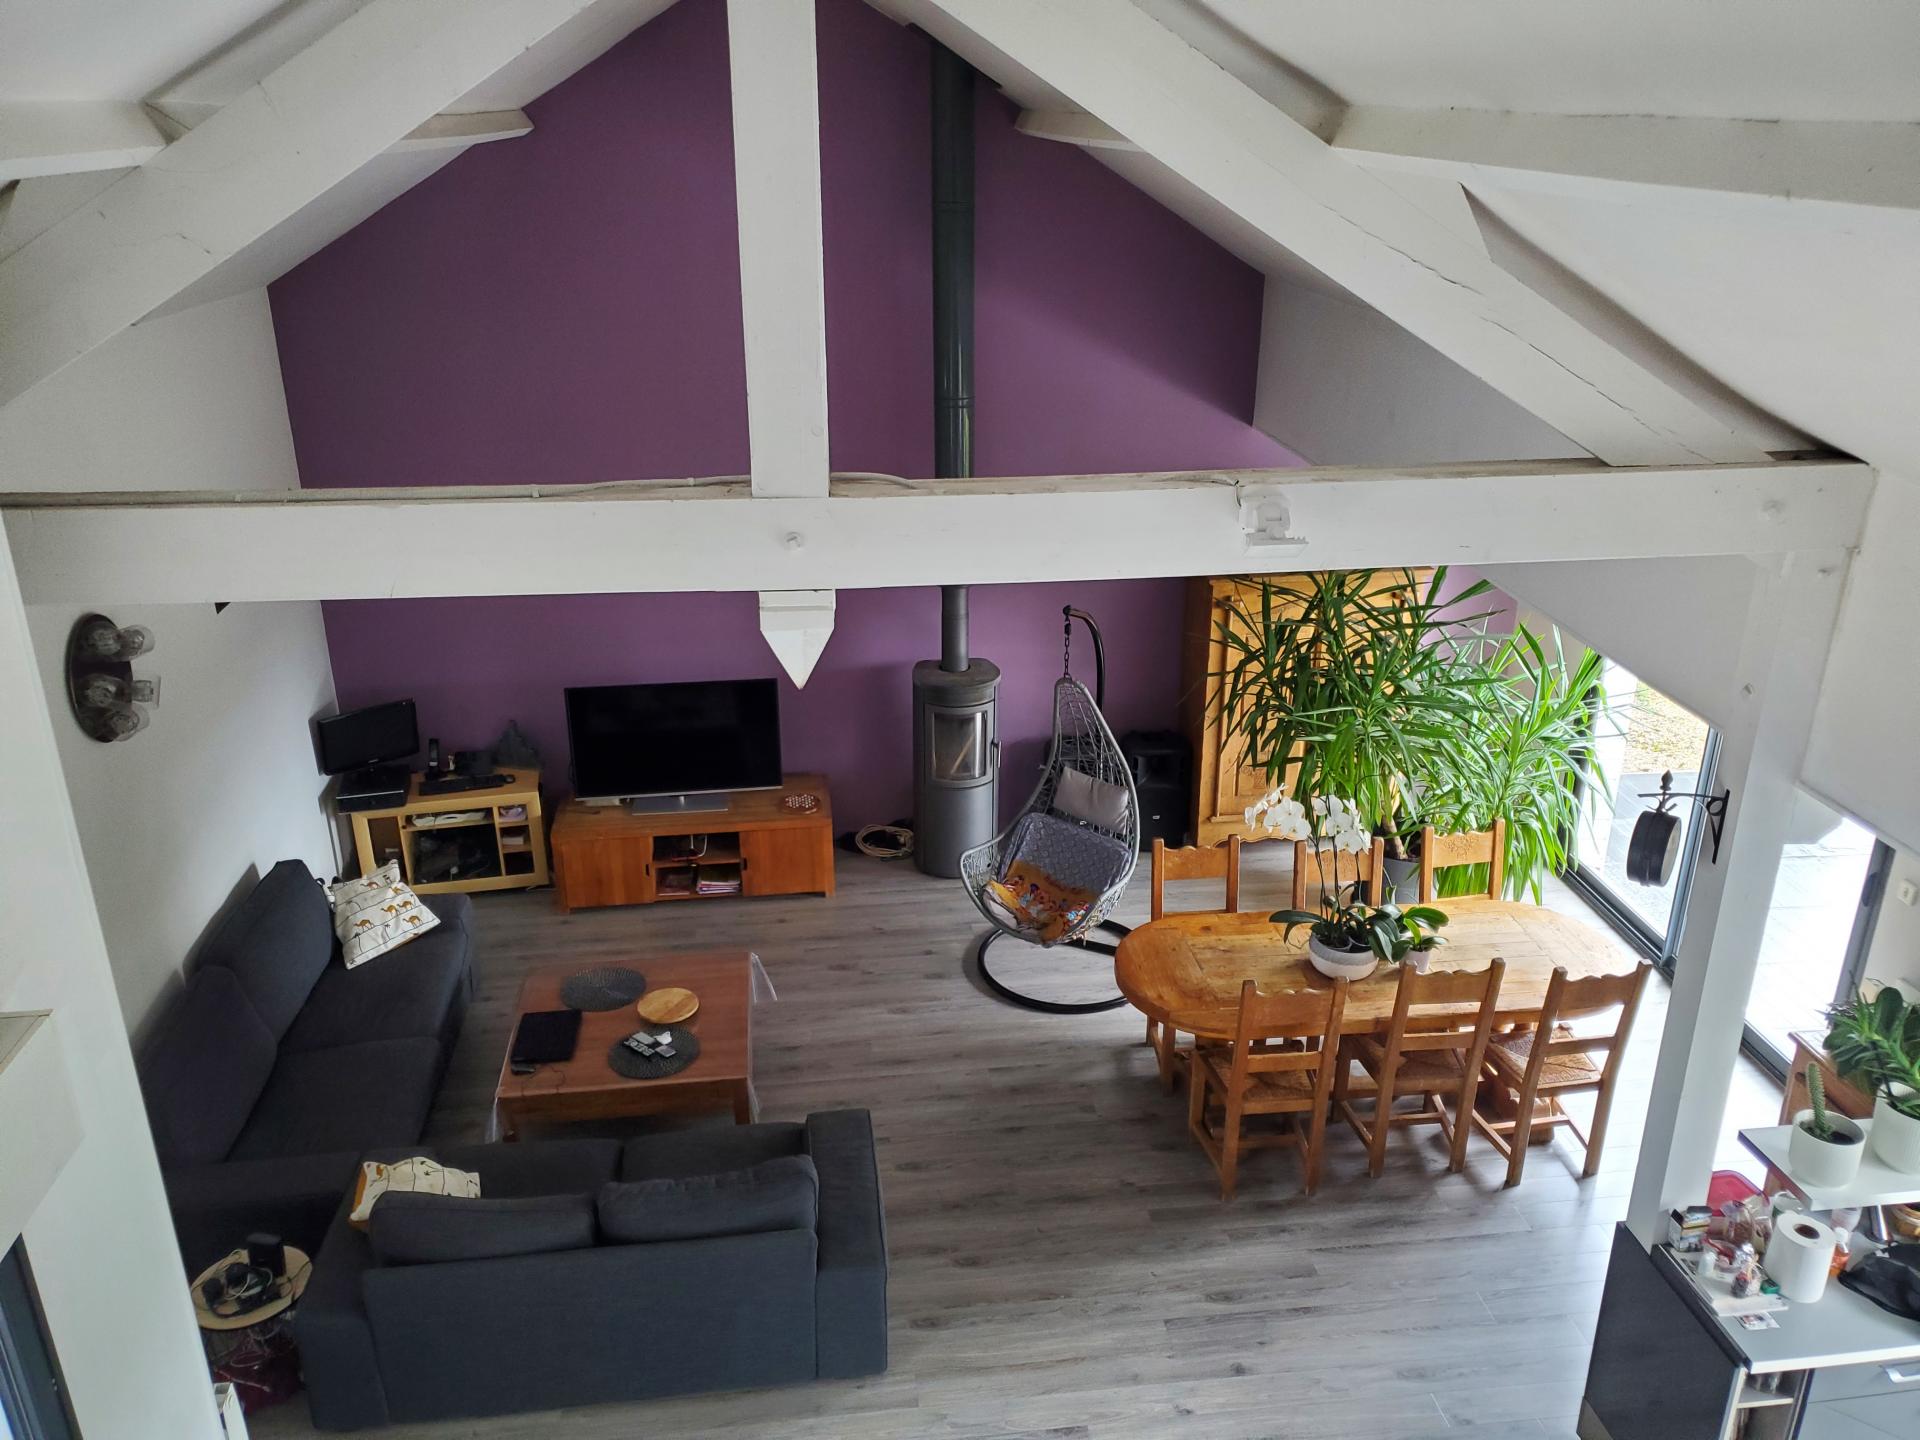 A 30 minutes de Rouen, maison d'architecte ossature bois avec vaste pièce à vivre donnant sur beau jardin arboré , commune de Blainville-Crevon